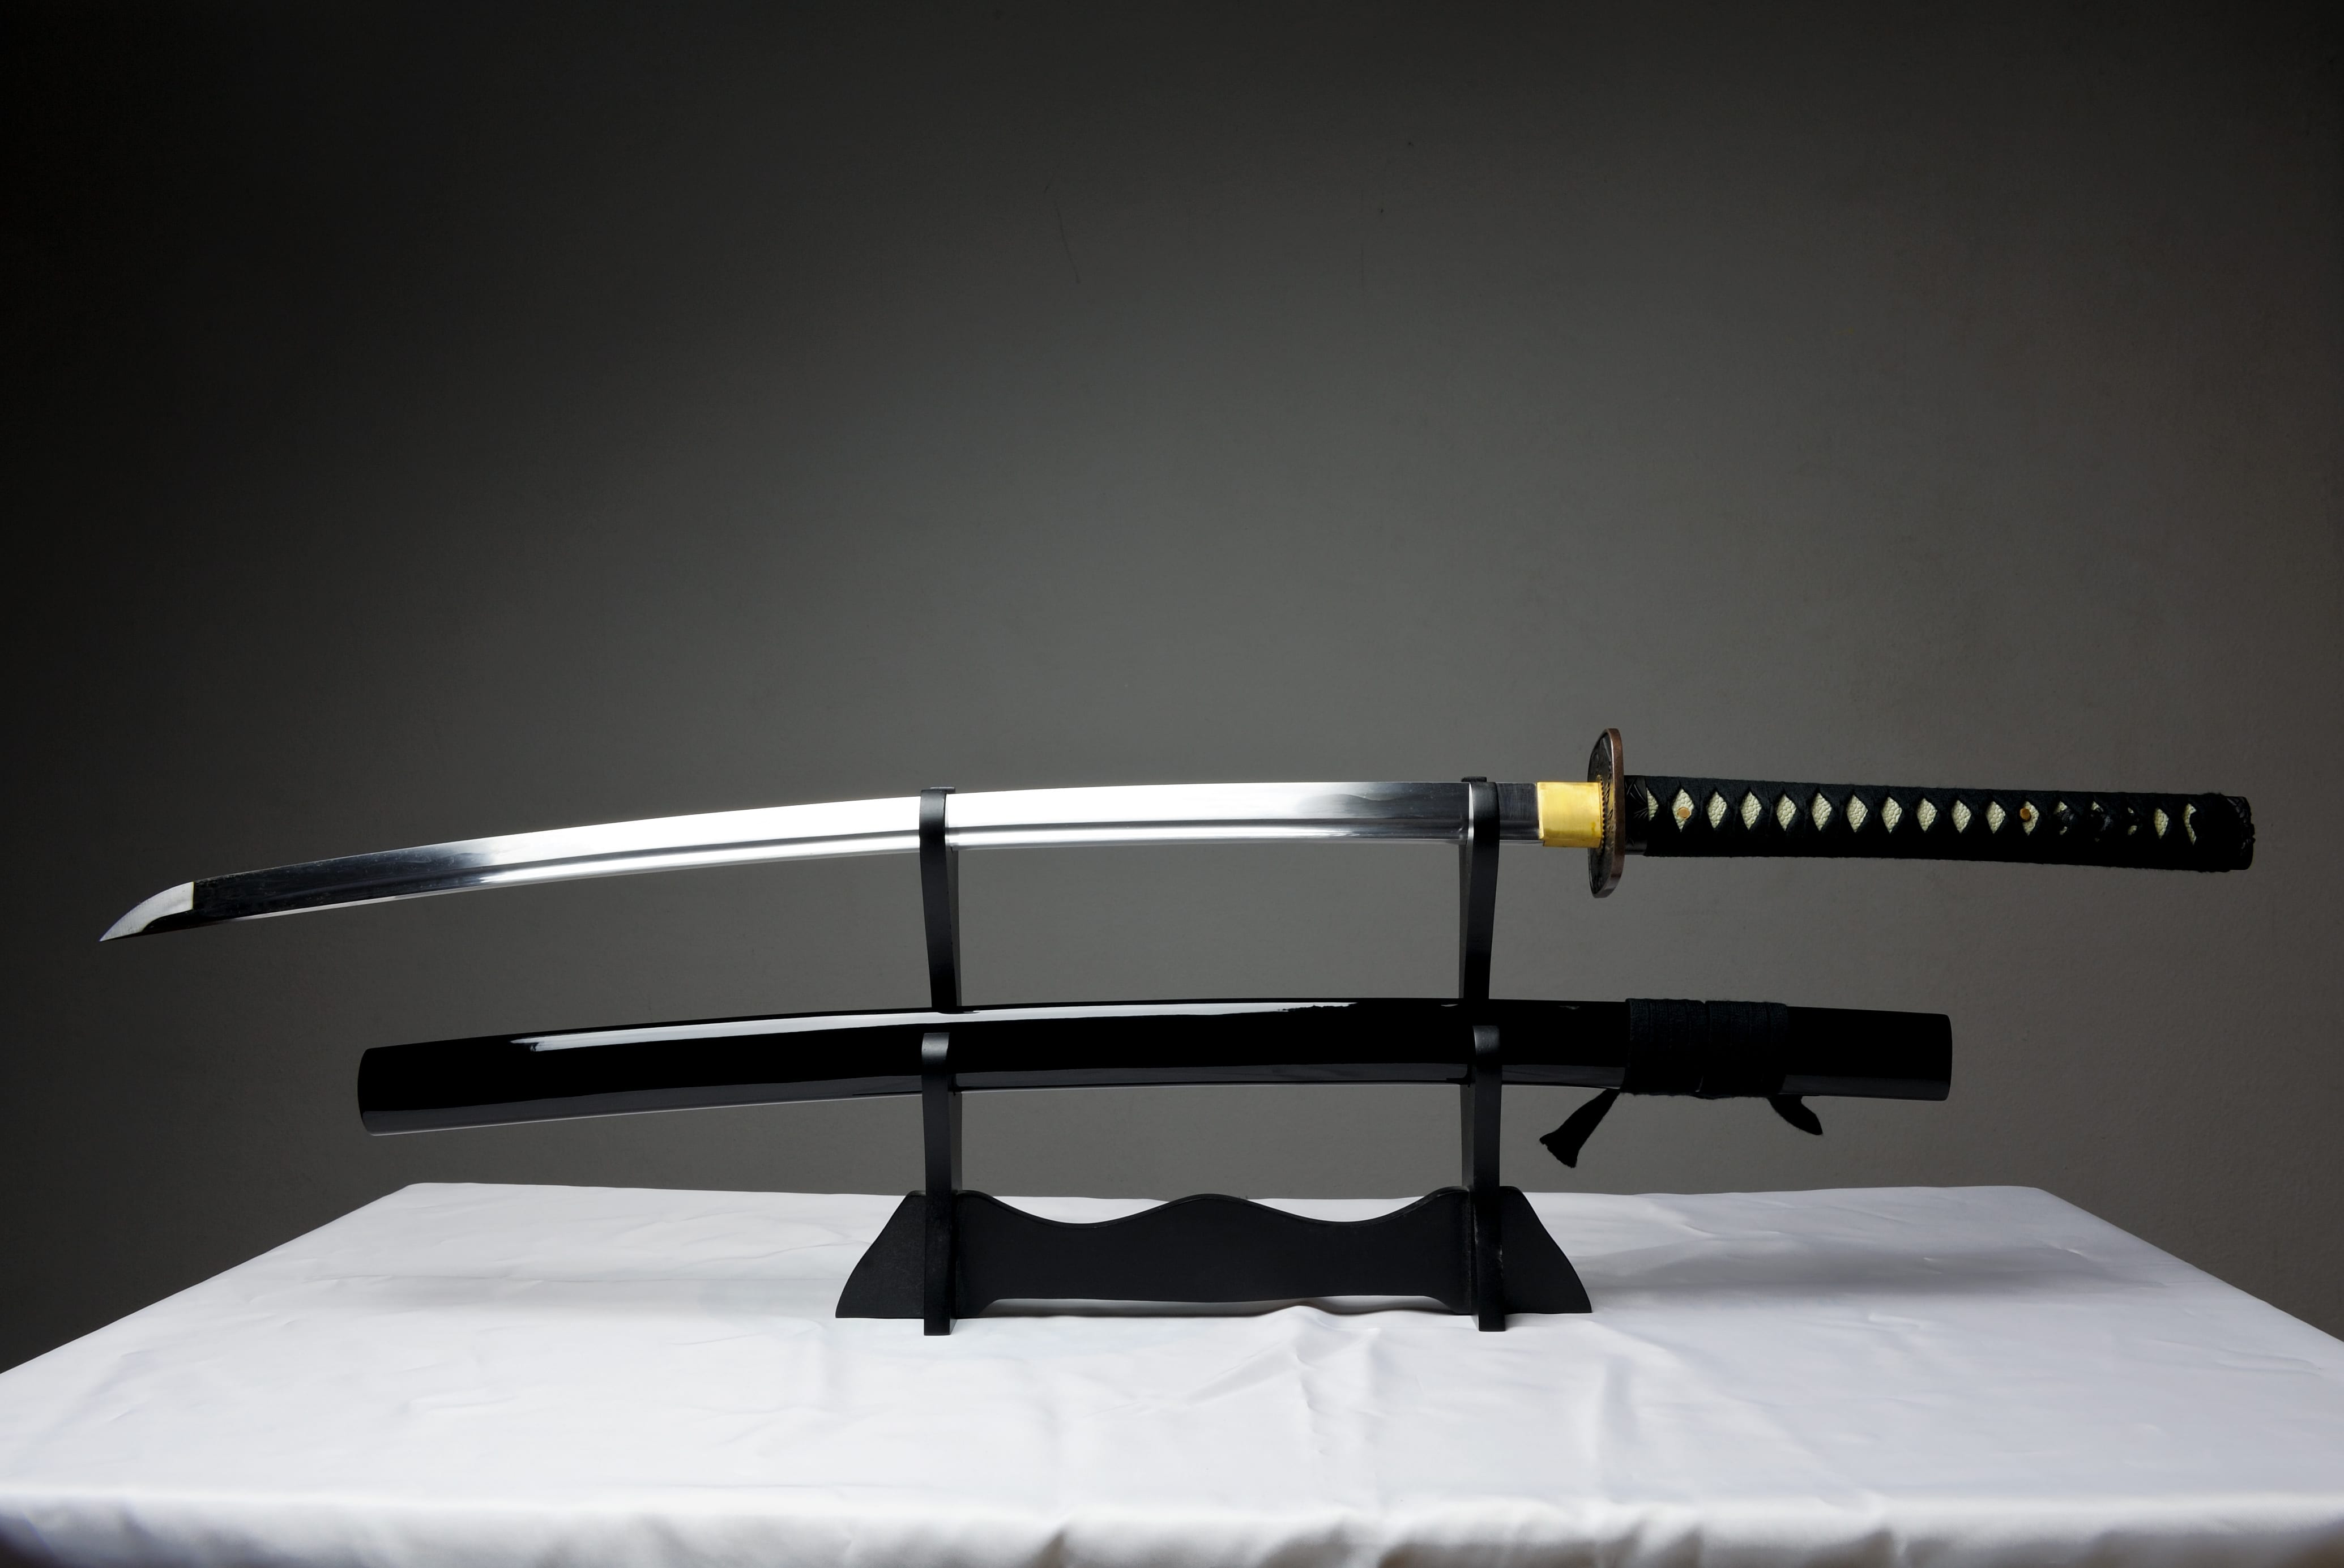 ゲームの影響か 刀剣女子 が大増殖中 日本刀を見るのが好きな人の割合は ニコニコニュース